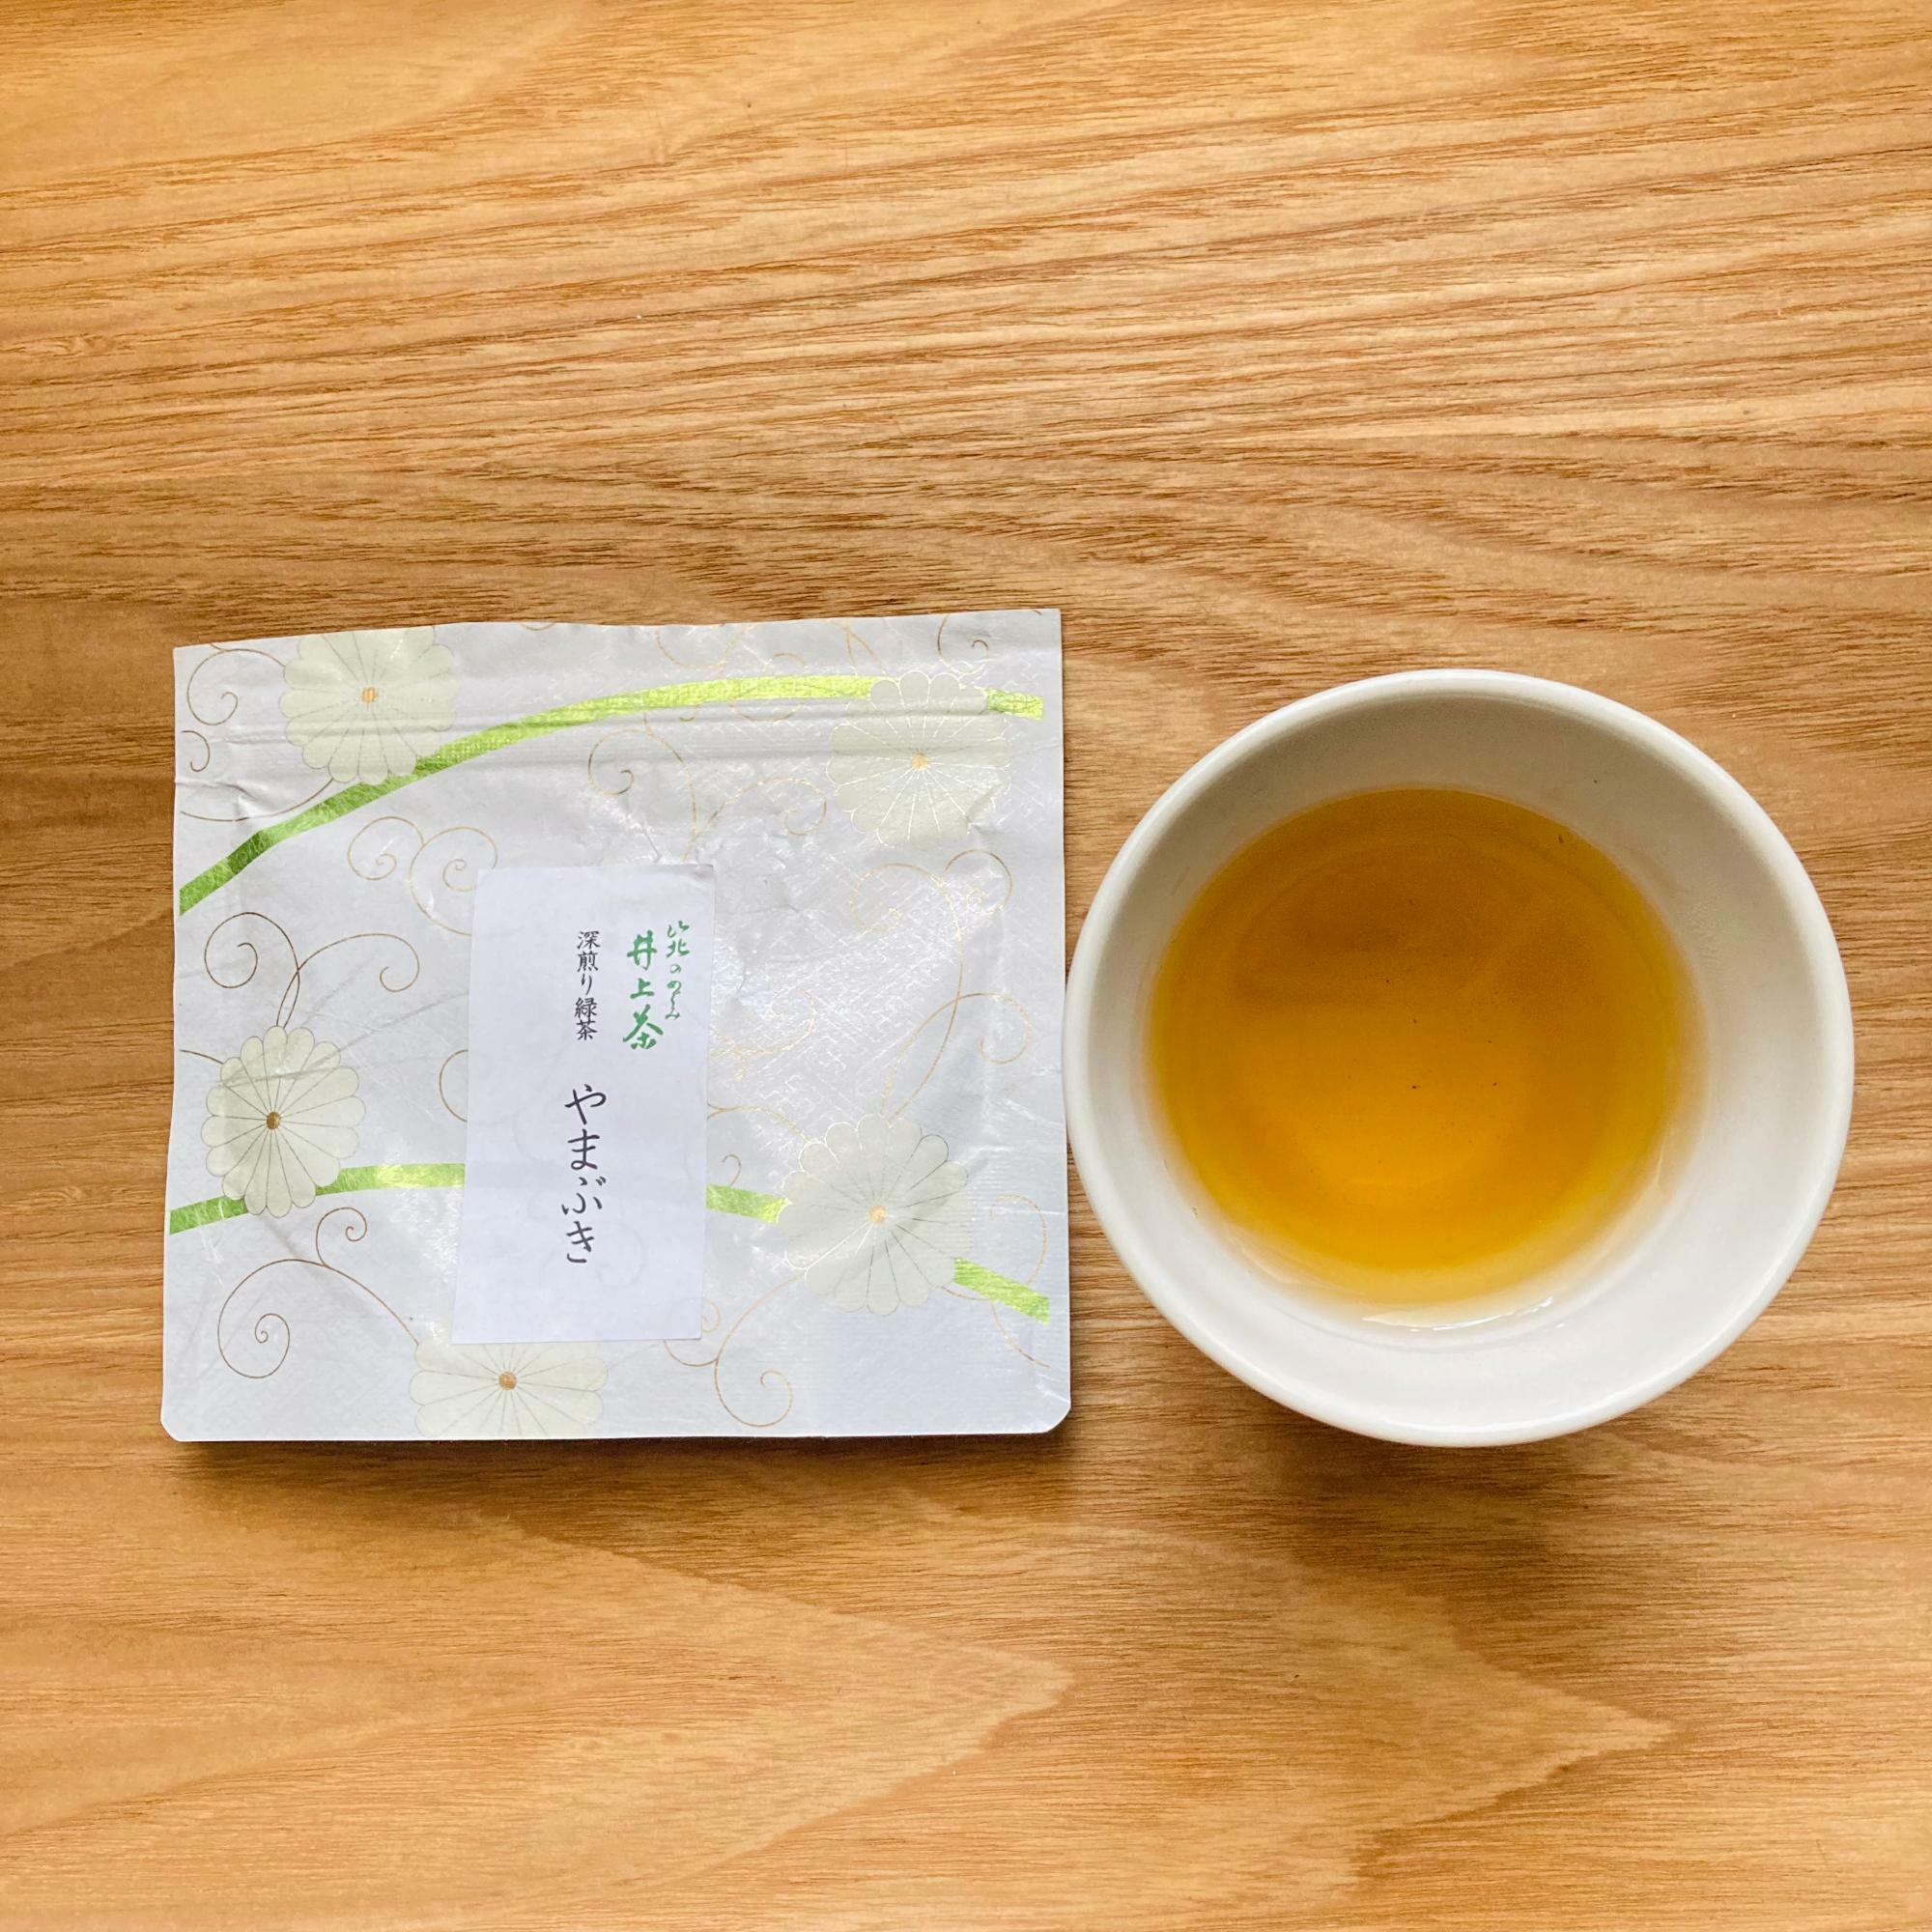 川崎市の水源地の一つ神奈川県西部の山北町で作られている浅炒りのほうじ茶。せっかくなので川崎にゆかりのあるものを使って奈良茶飯を作ります。